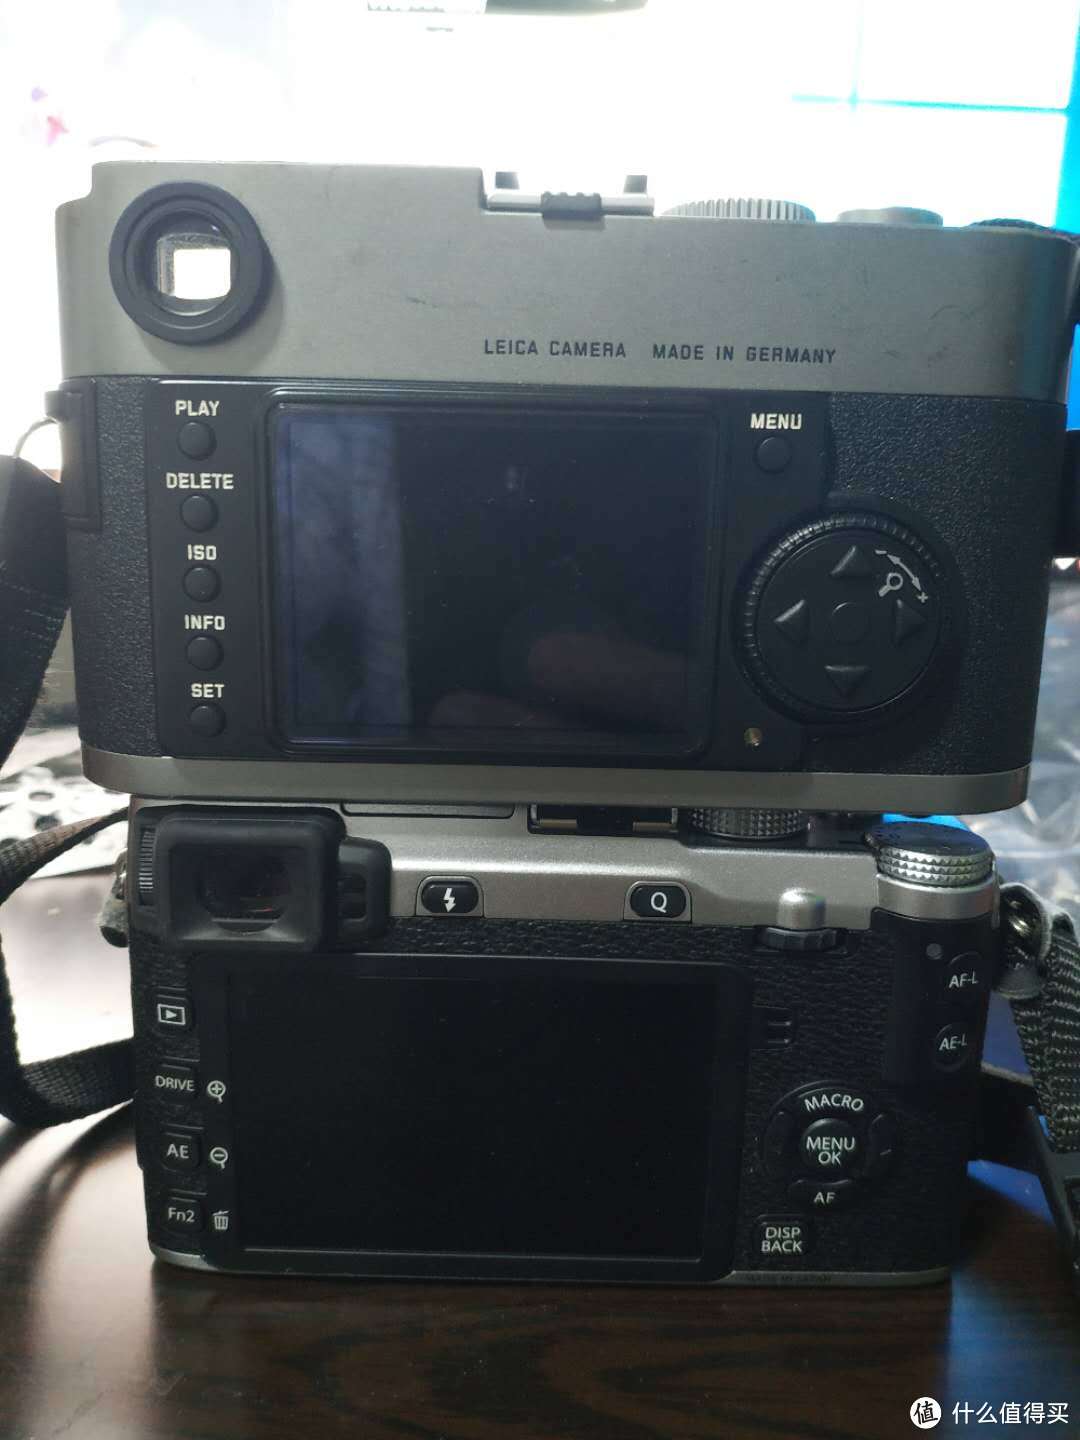 一台2009年上市的Leica 徕卡 M9 数码相机是否值得买？